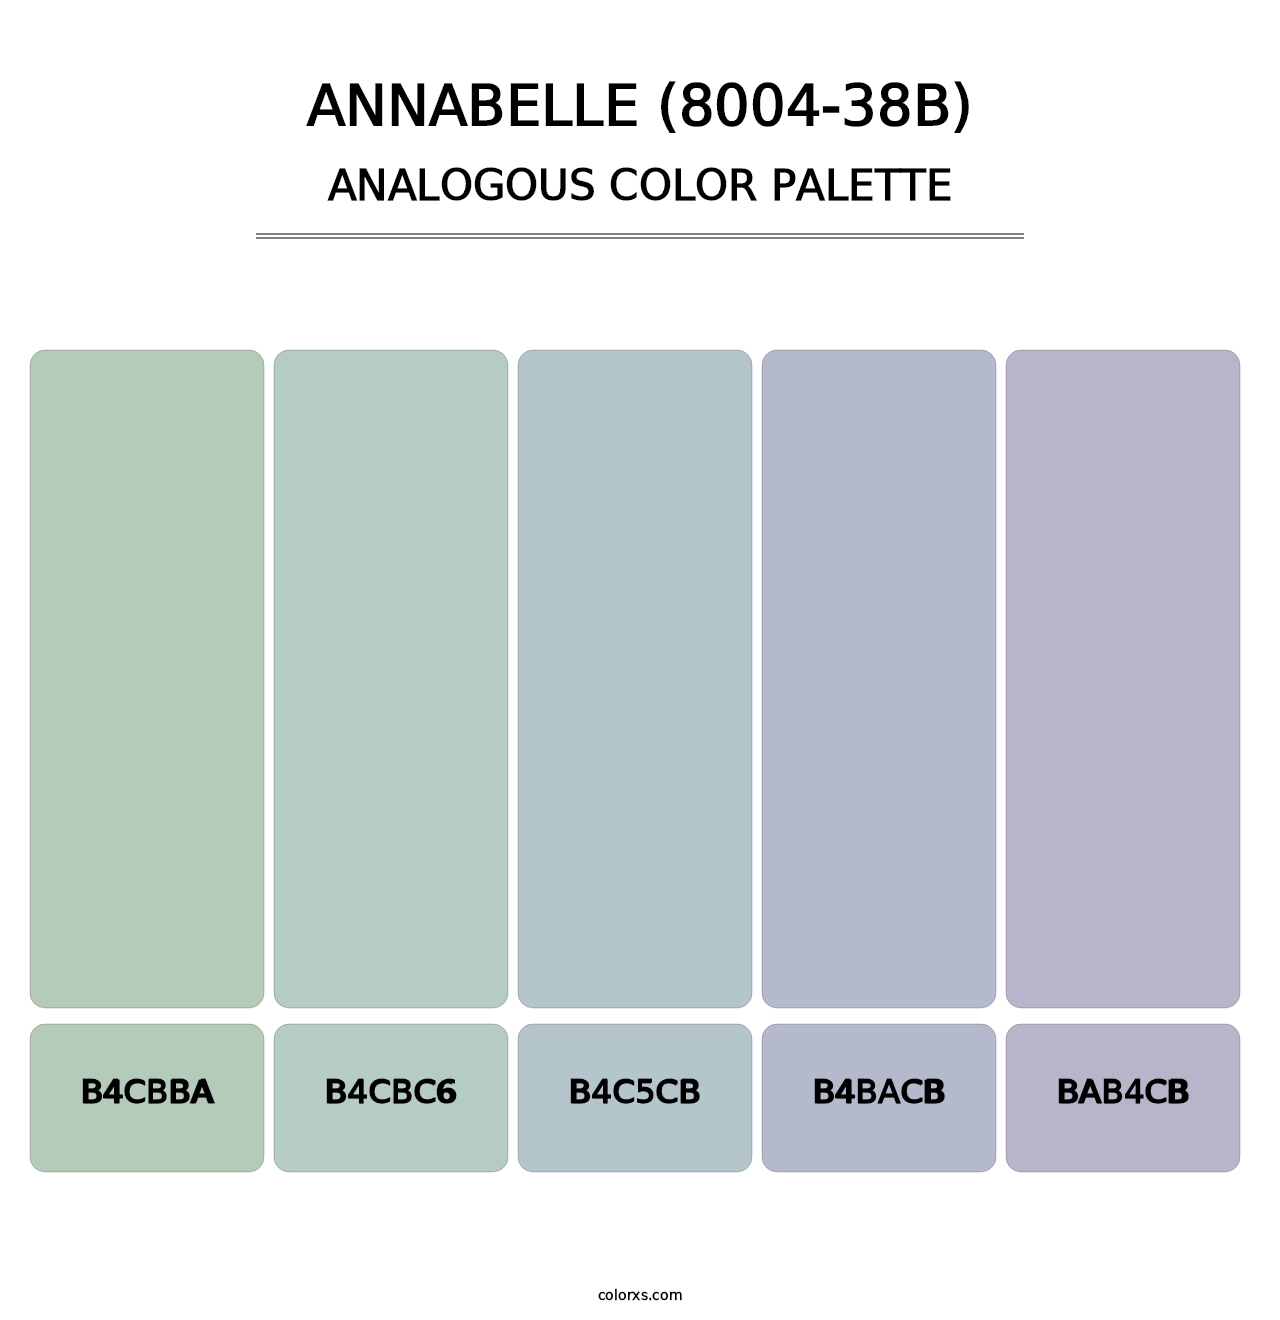 Annabelle (8004-38B) - Analogous Color Palette